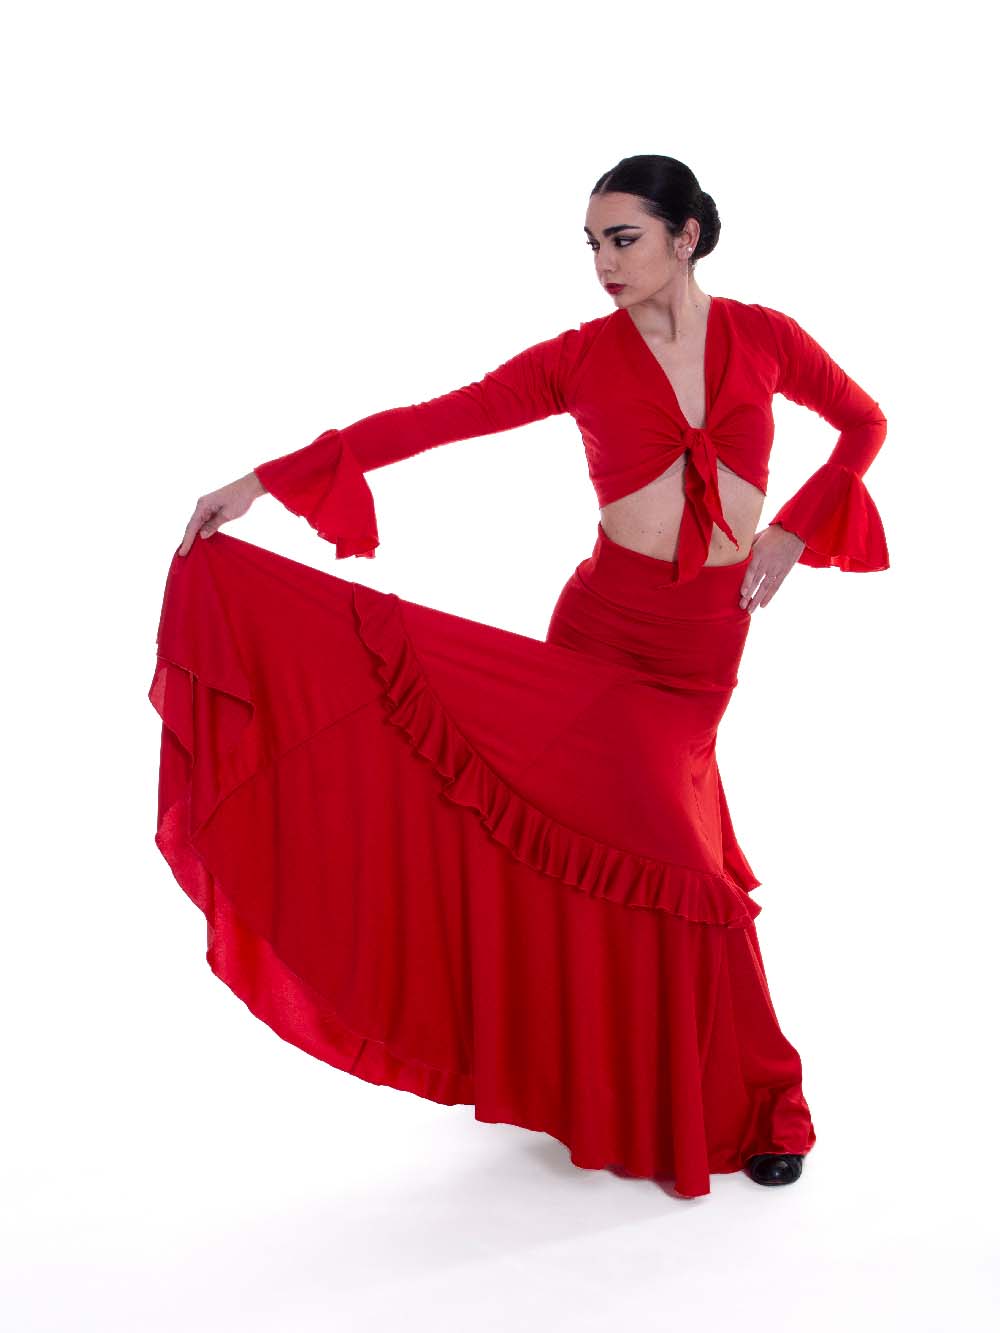 Falda de Flamenco Bienne. Davedans, Vestuario para Baile Ropa de Flamenco